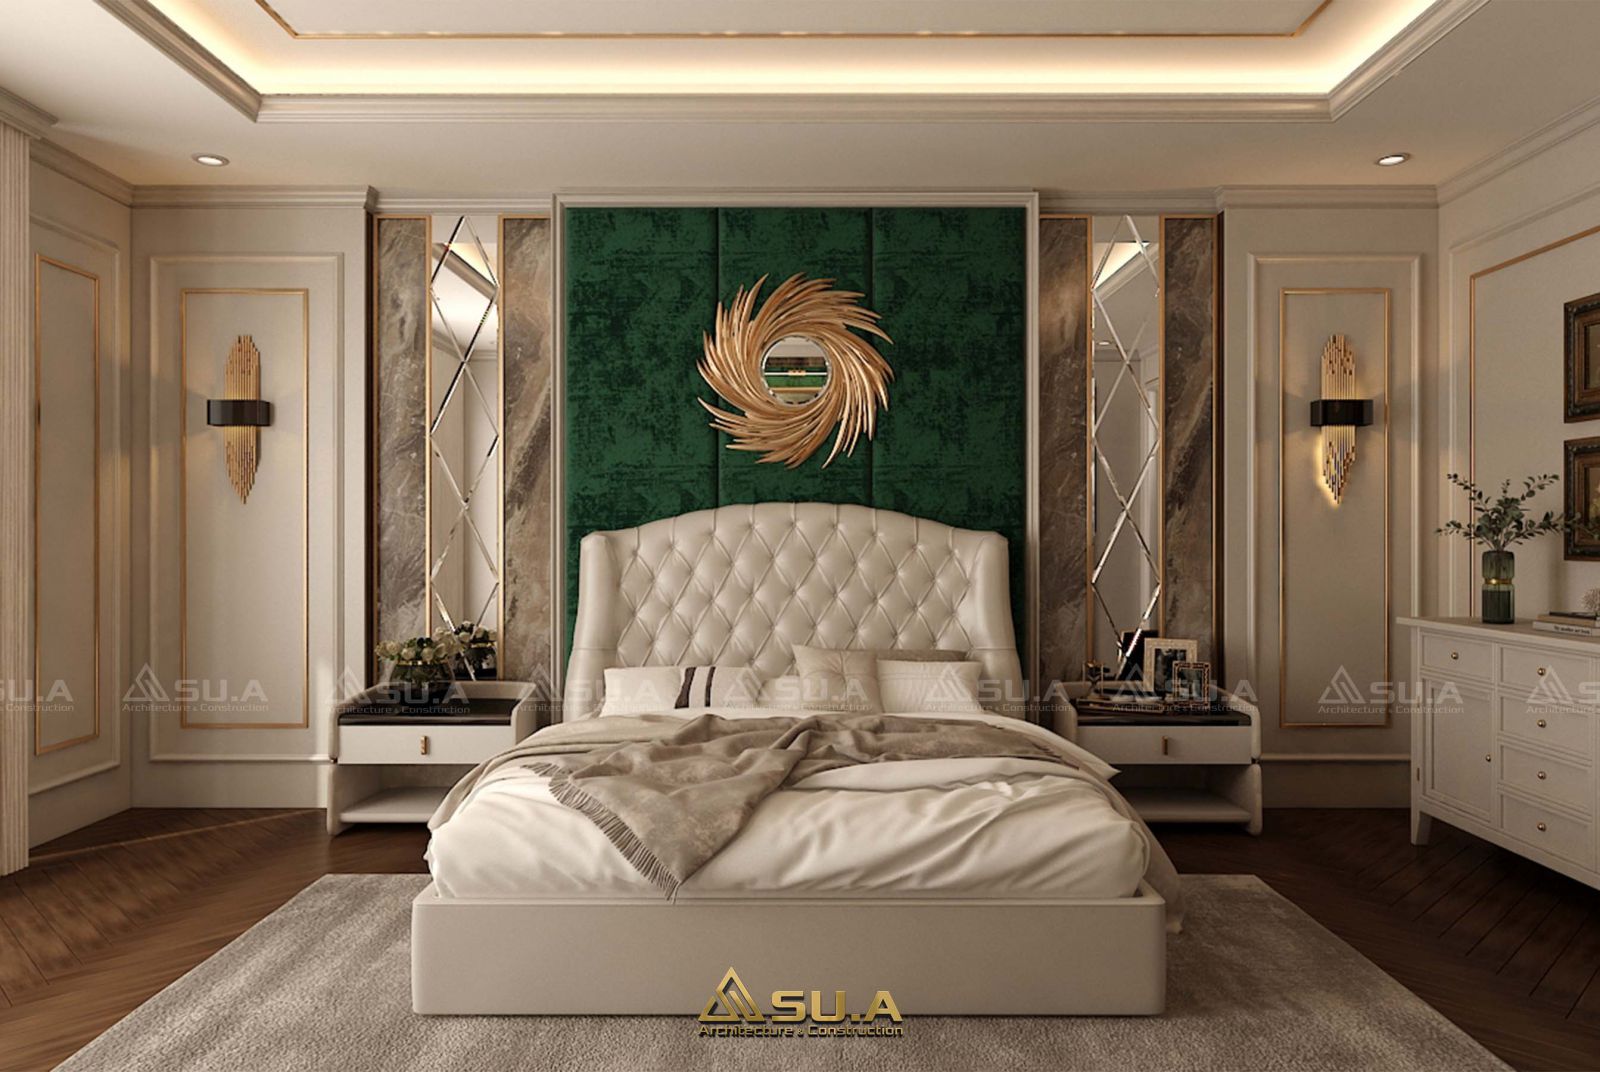 Mẫu thiết kế phòng ngủ sử dụng nội thất cao cấp có giường ngủ lớn bọc nệm, kết hợp với các tủ trang trì để đồ. Điểm nhấn là các vách tường được thiết kế màu xanh lá tạo sự sang trọng, đẳng cấp cho căn phòng